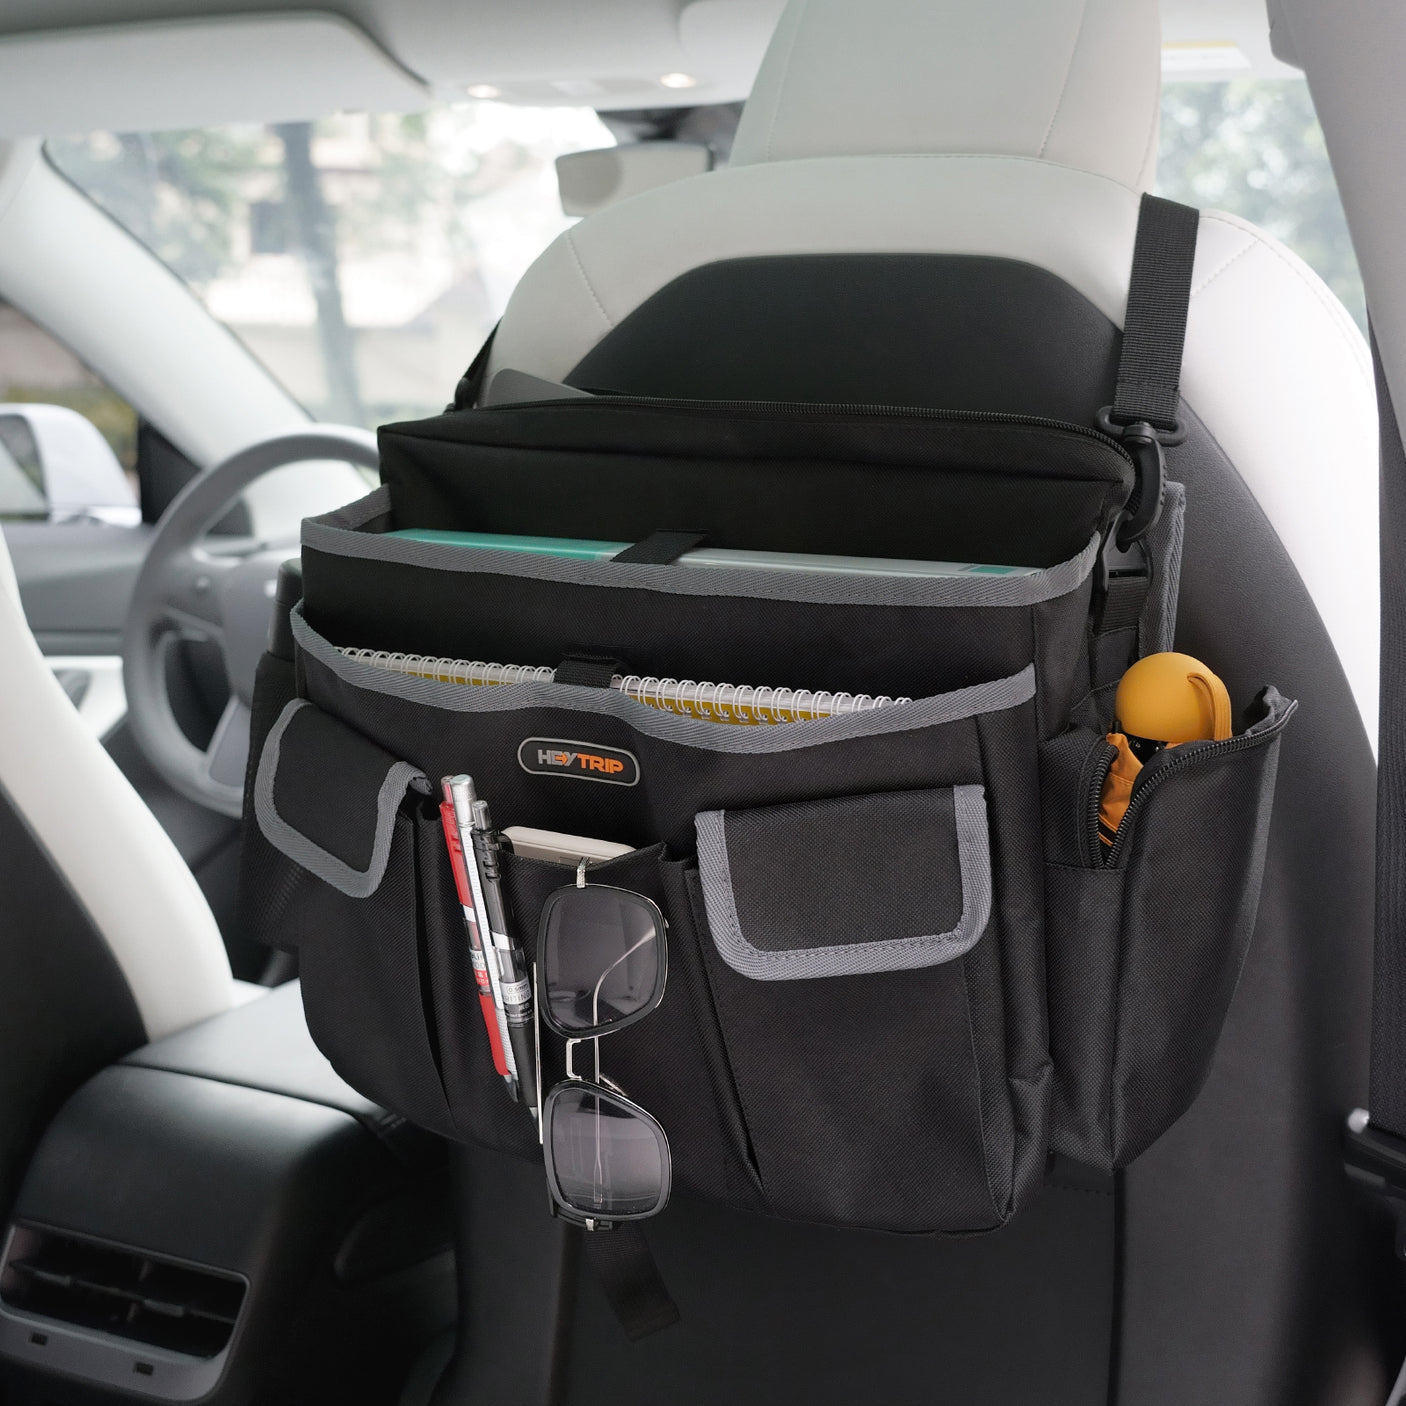 HEYTRIP® Car Front Seat Organizer Message Bag Passenger Seat